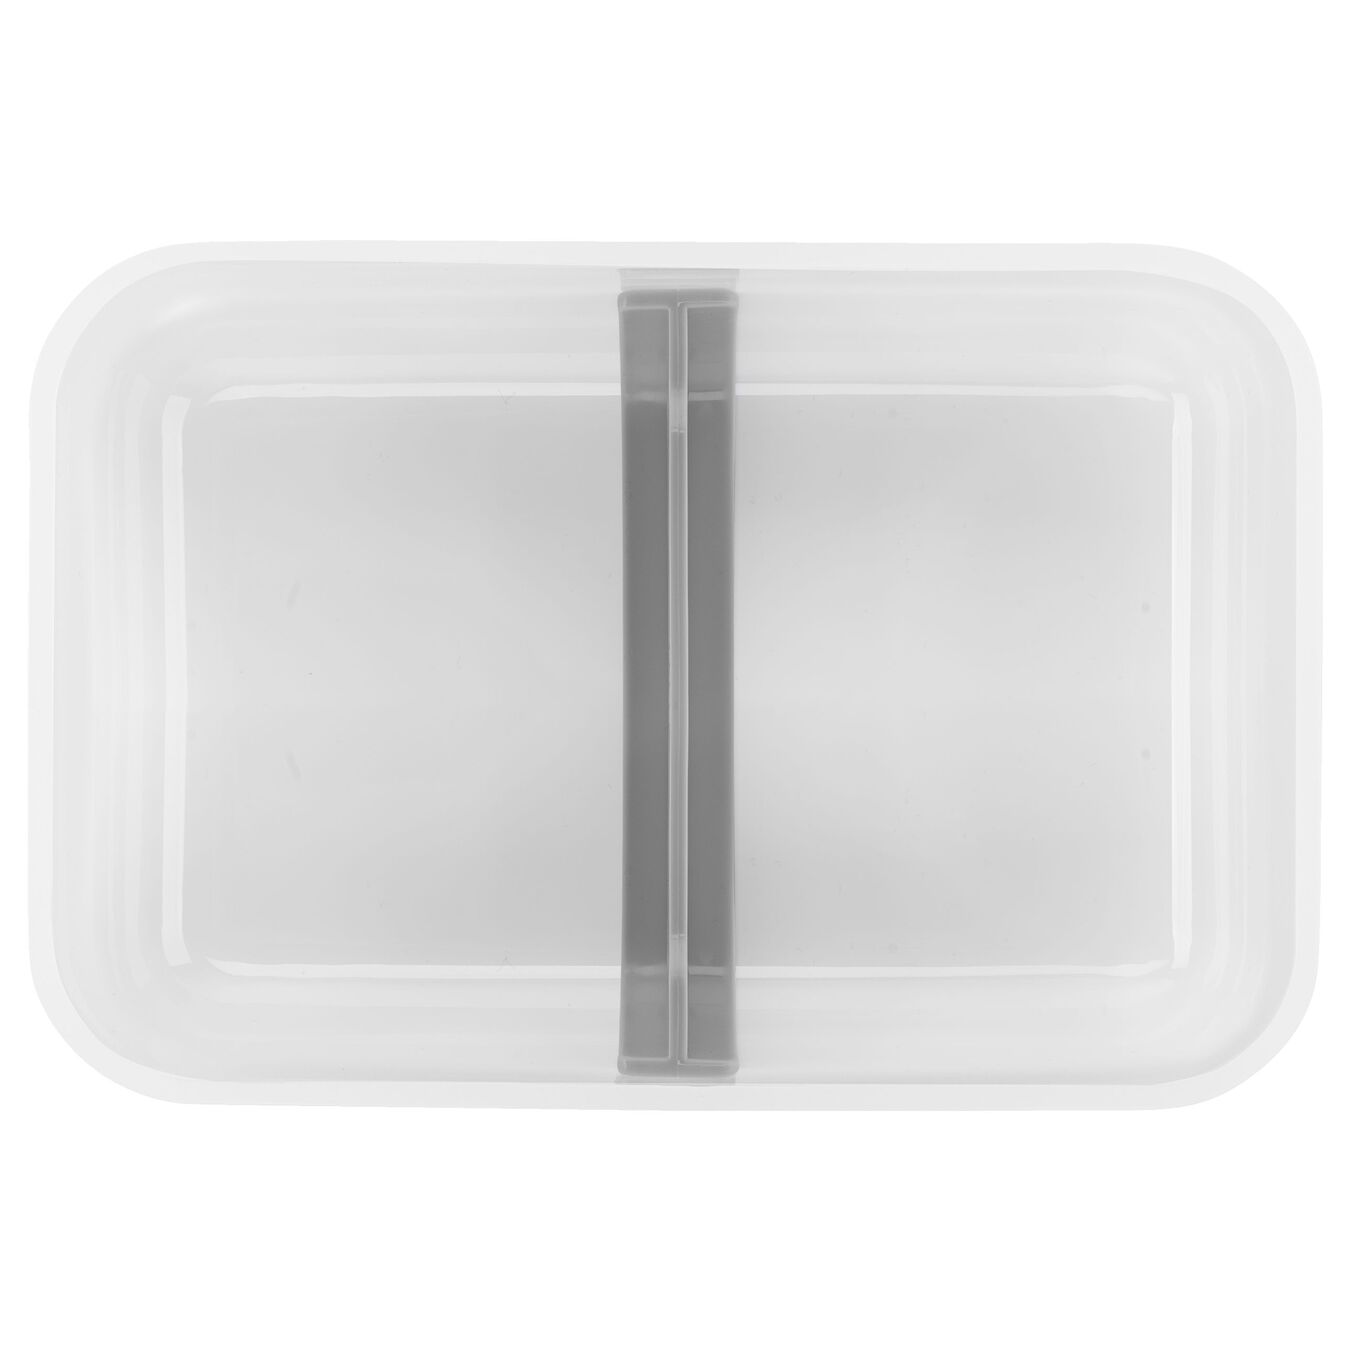 Lot de lunch box sous-vide L plate / 6-pcs, Plastique, semi transparent-Gris,,large 5